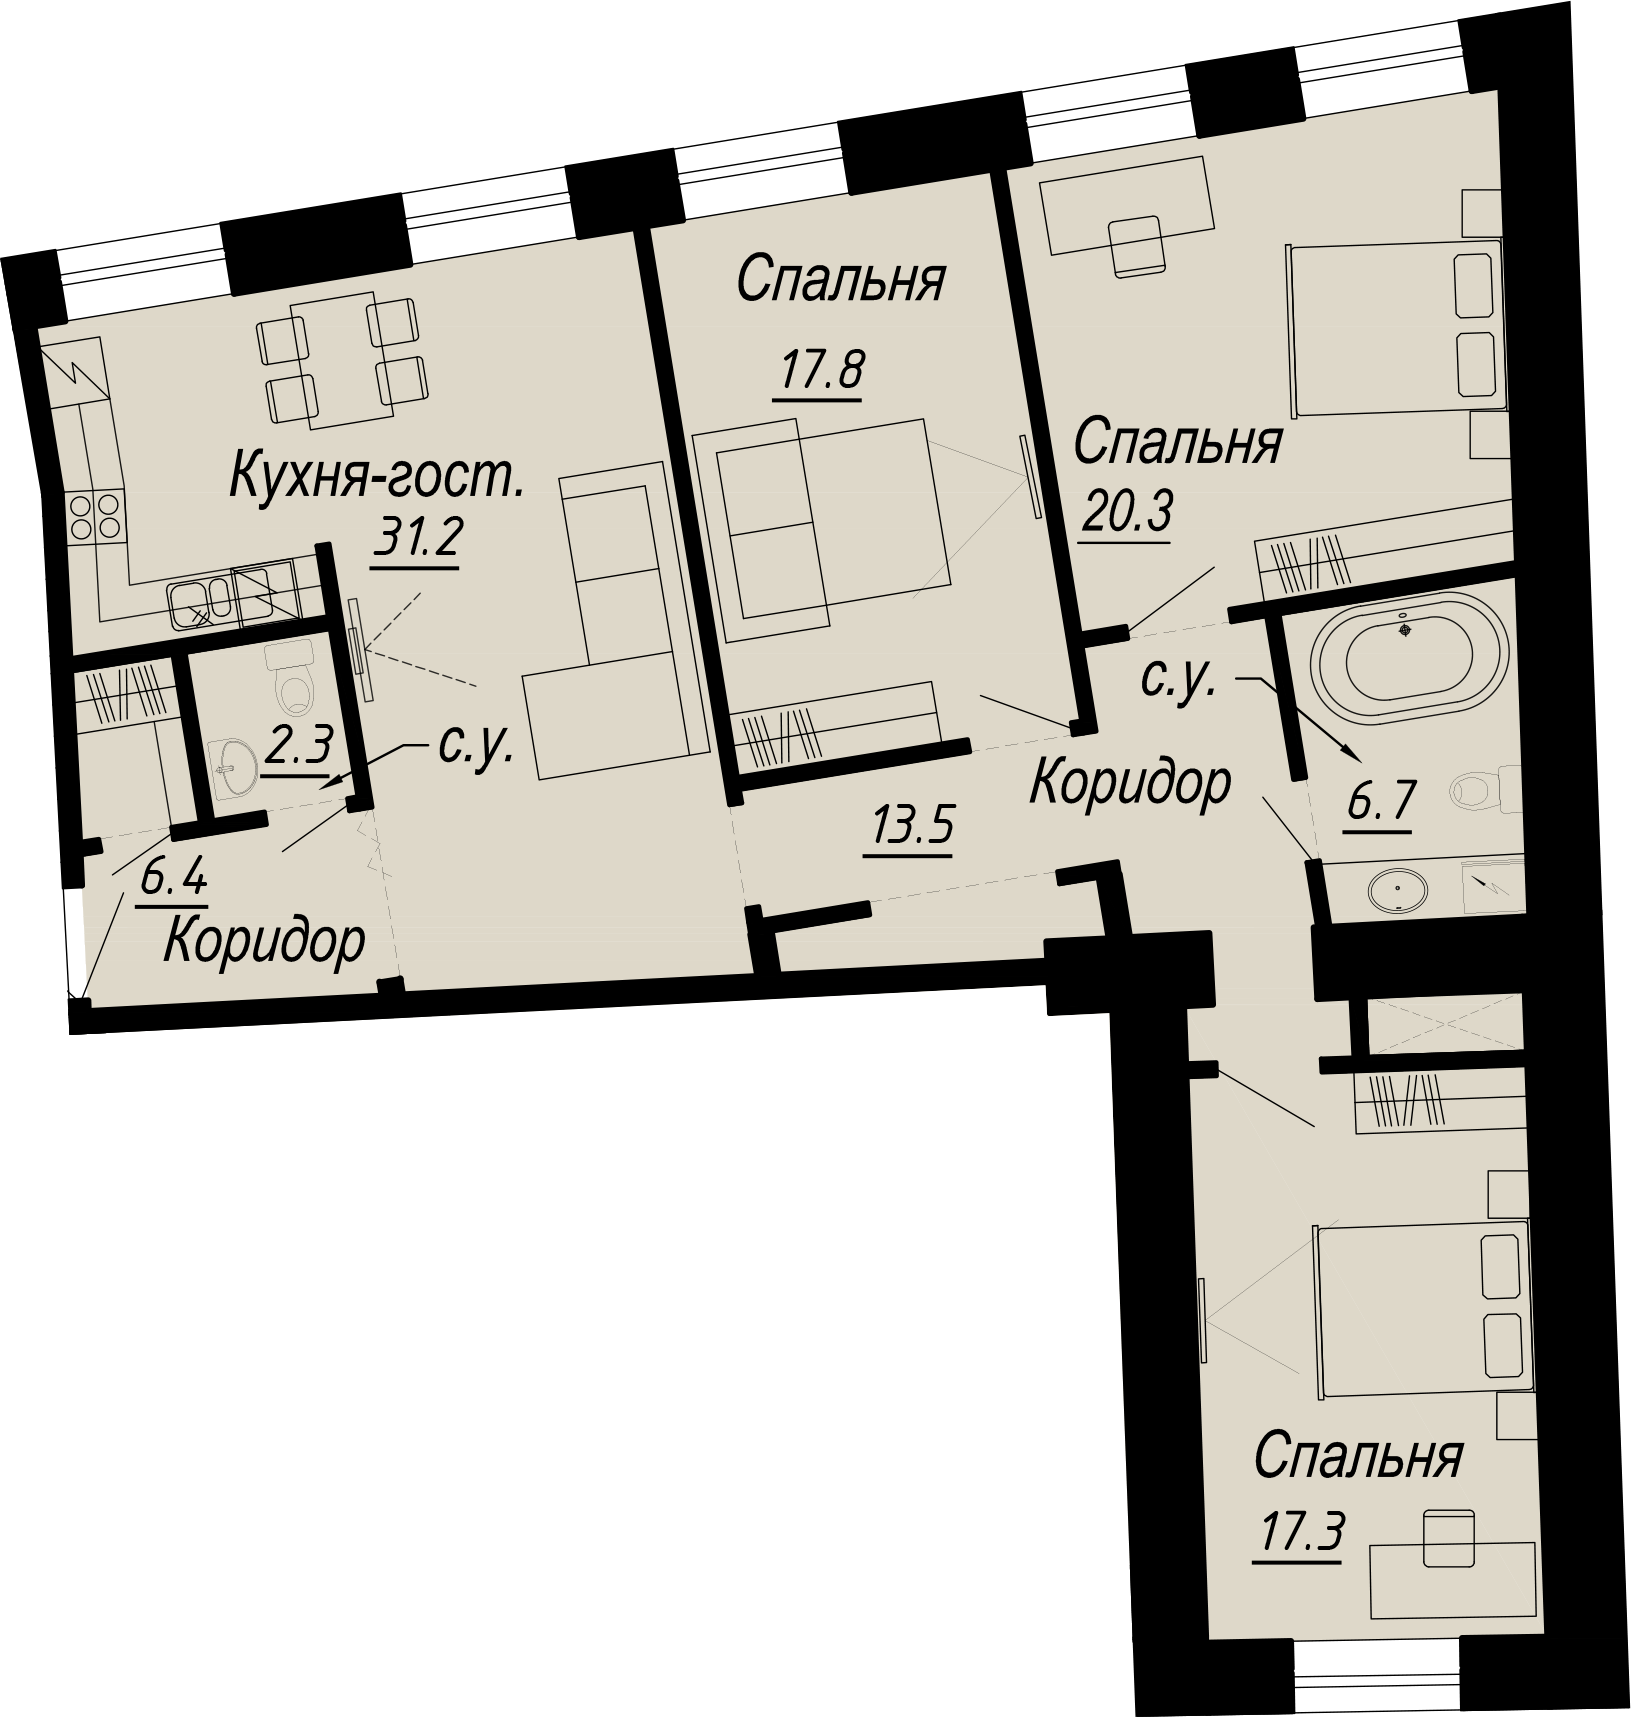 3-комнатная квартира  №19-4 в Meltzer Hall: 117.61 м², этаж 4 - купить в Санкт-Петербурге